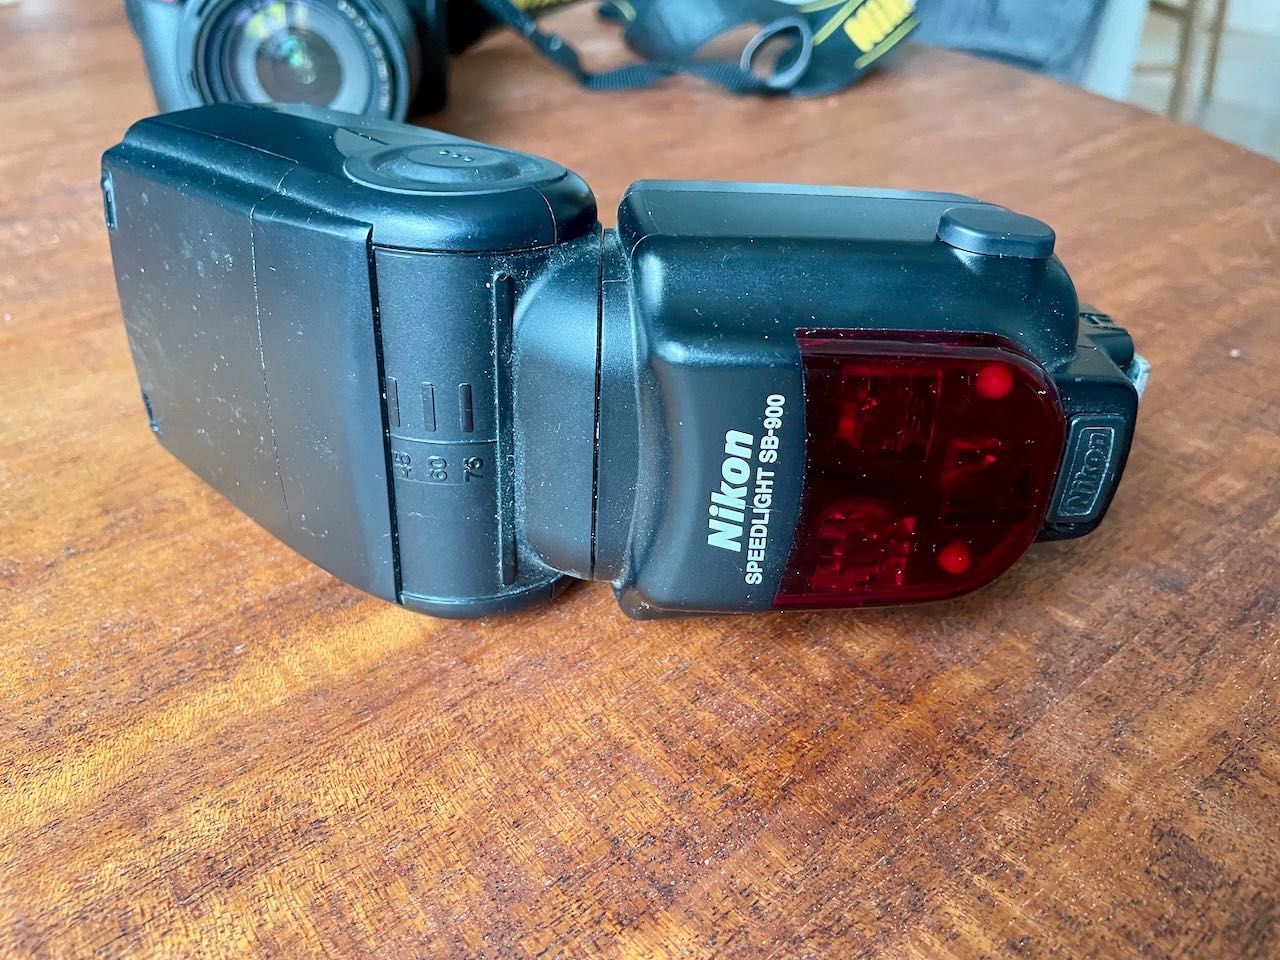 Nikon D90 + Kit 18-105 + 35 + SB900 + plecak